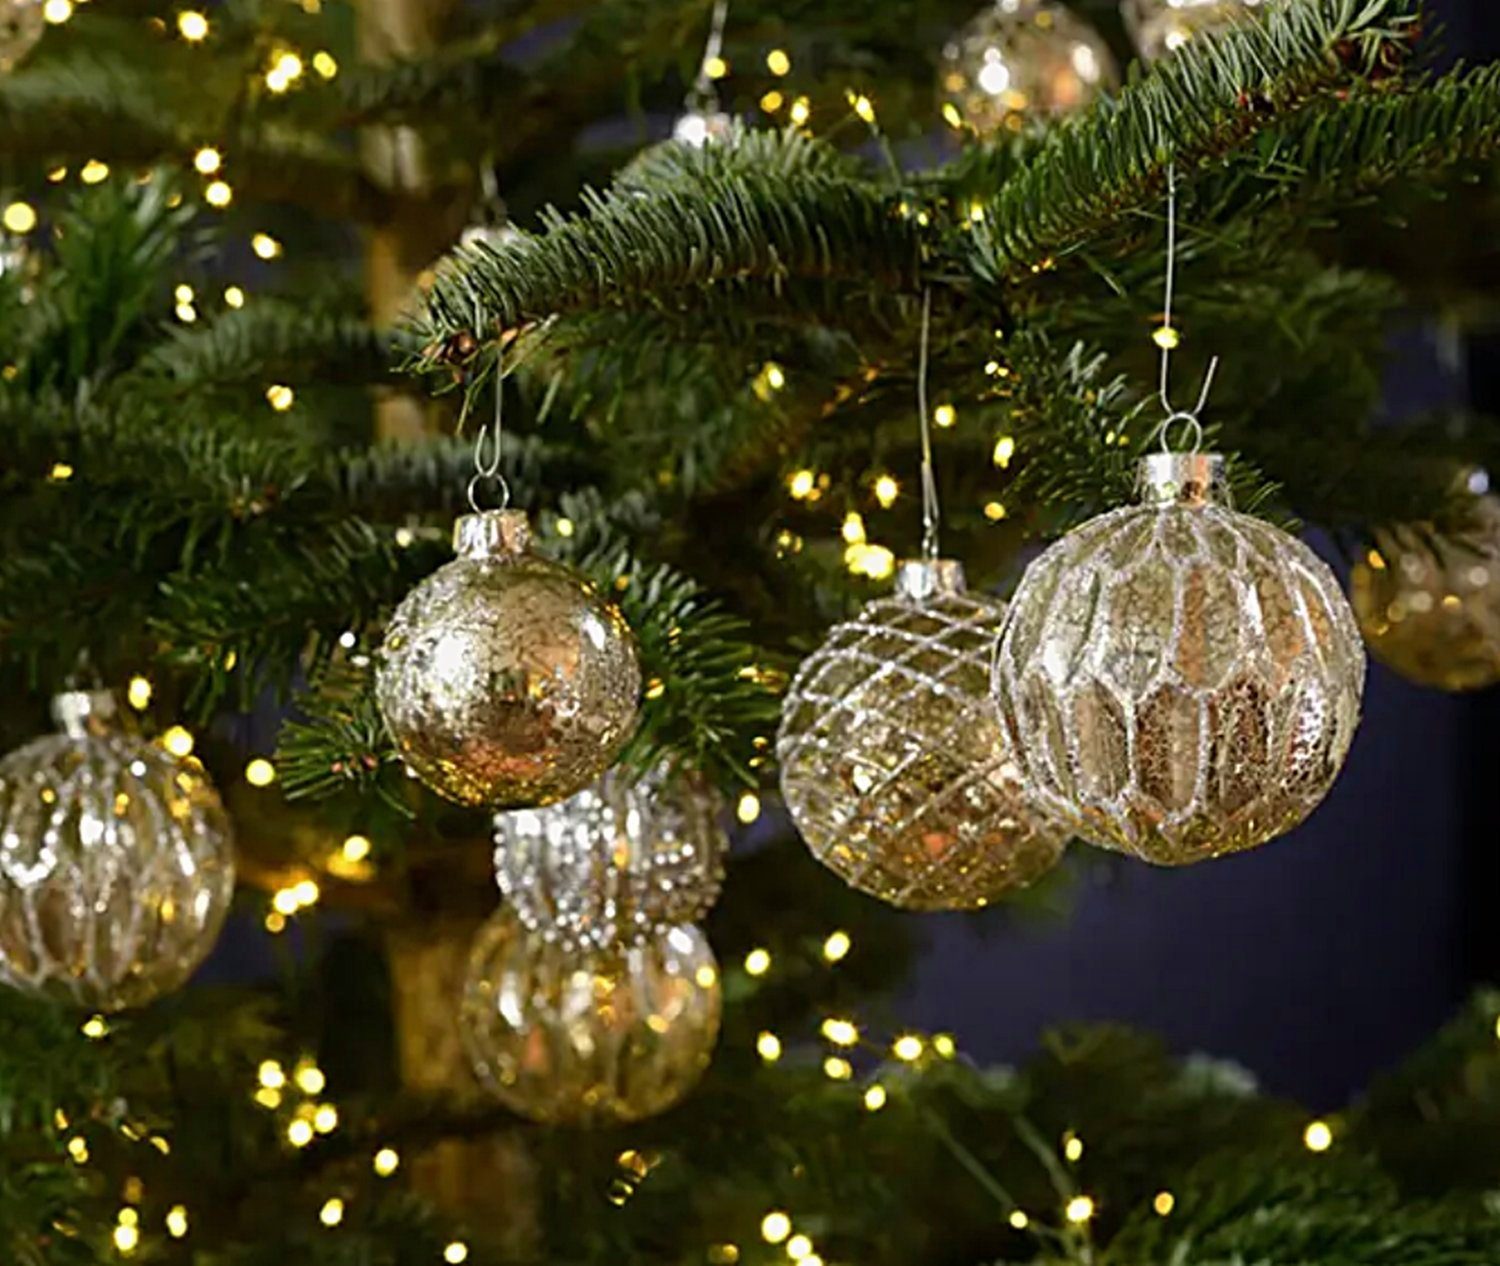 Taschen4life Weihnachtsbaumkugel Christbaumkugeln aus Glas im antik Landhaus Stil, 12 teiliges Set, 8x8x8cm, Advent und Weihnachten Deko silber